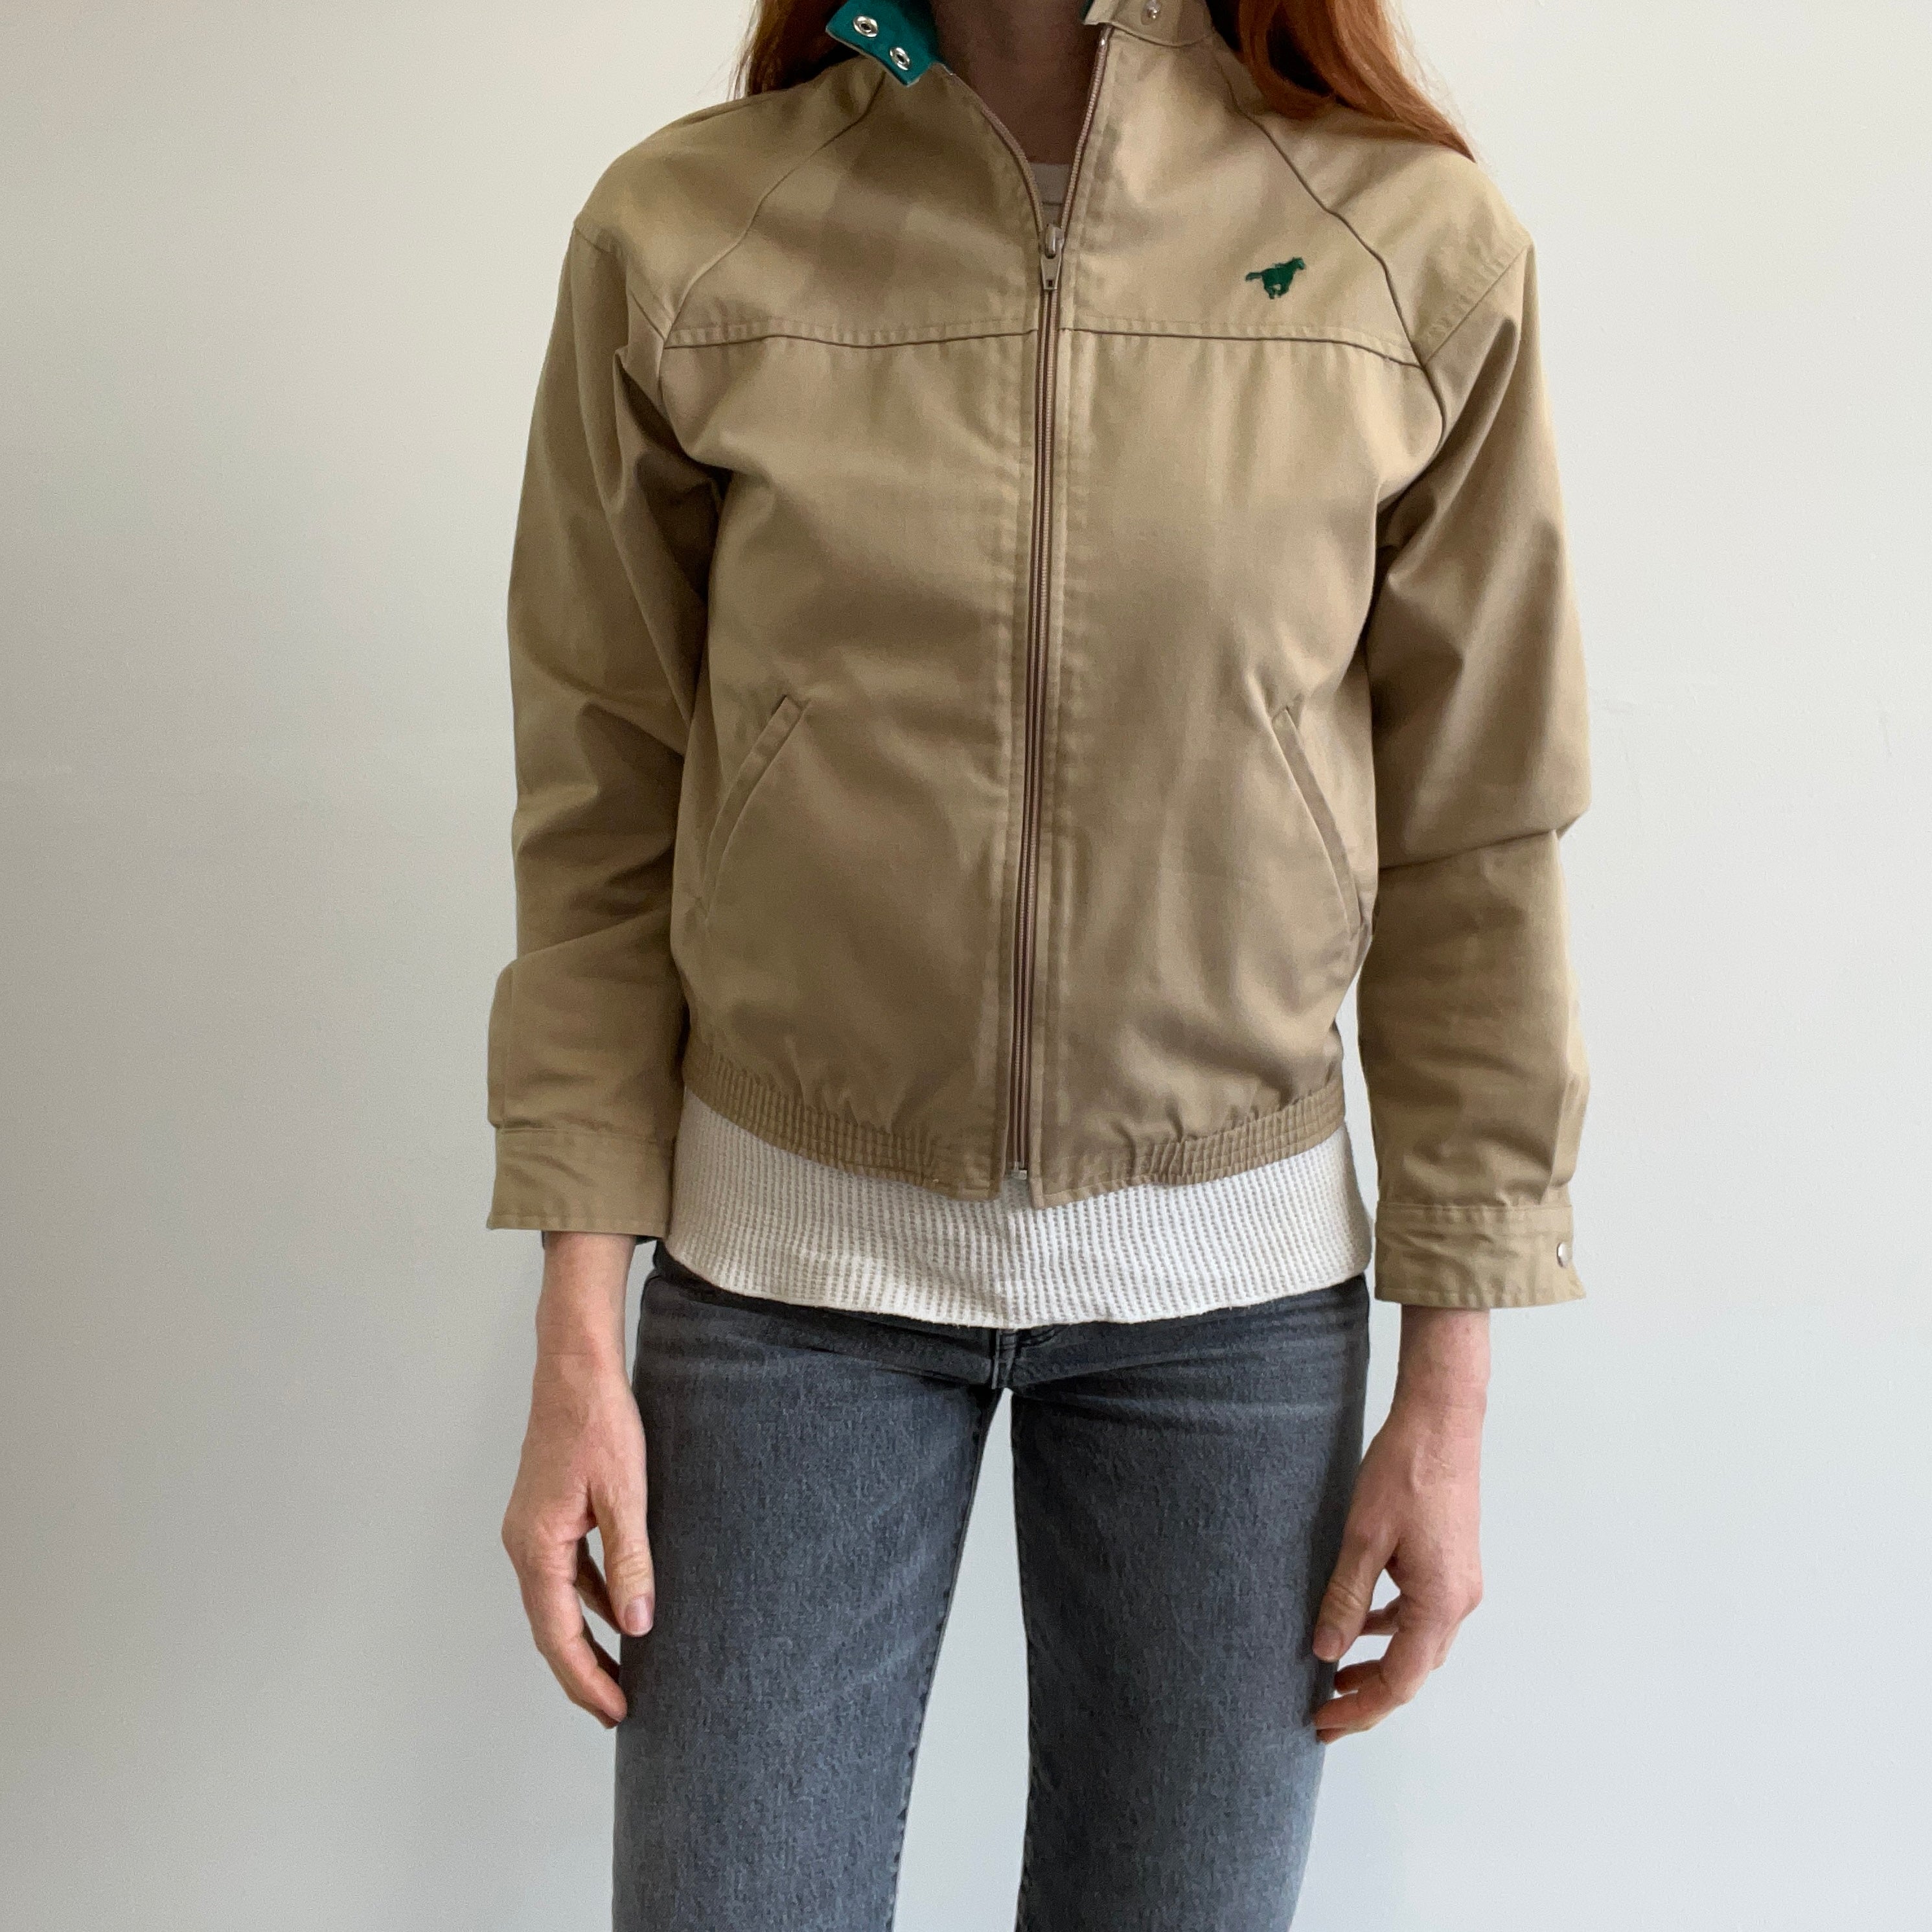 1980s Women's Wrangler Khaki and Green Jacket - WOWOWOWOWOWOW